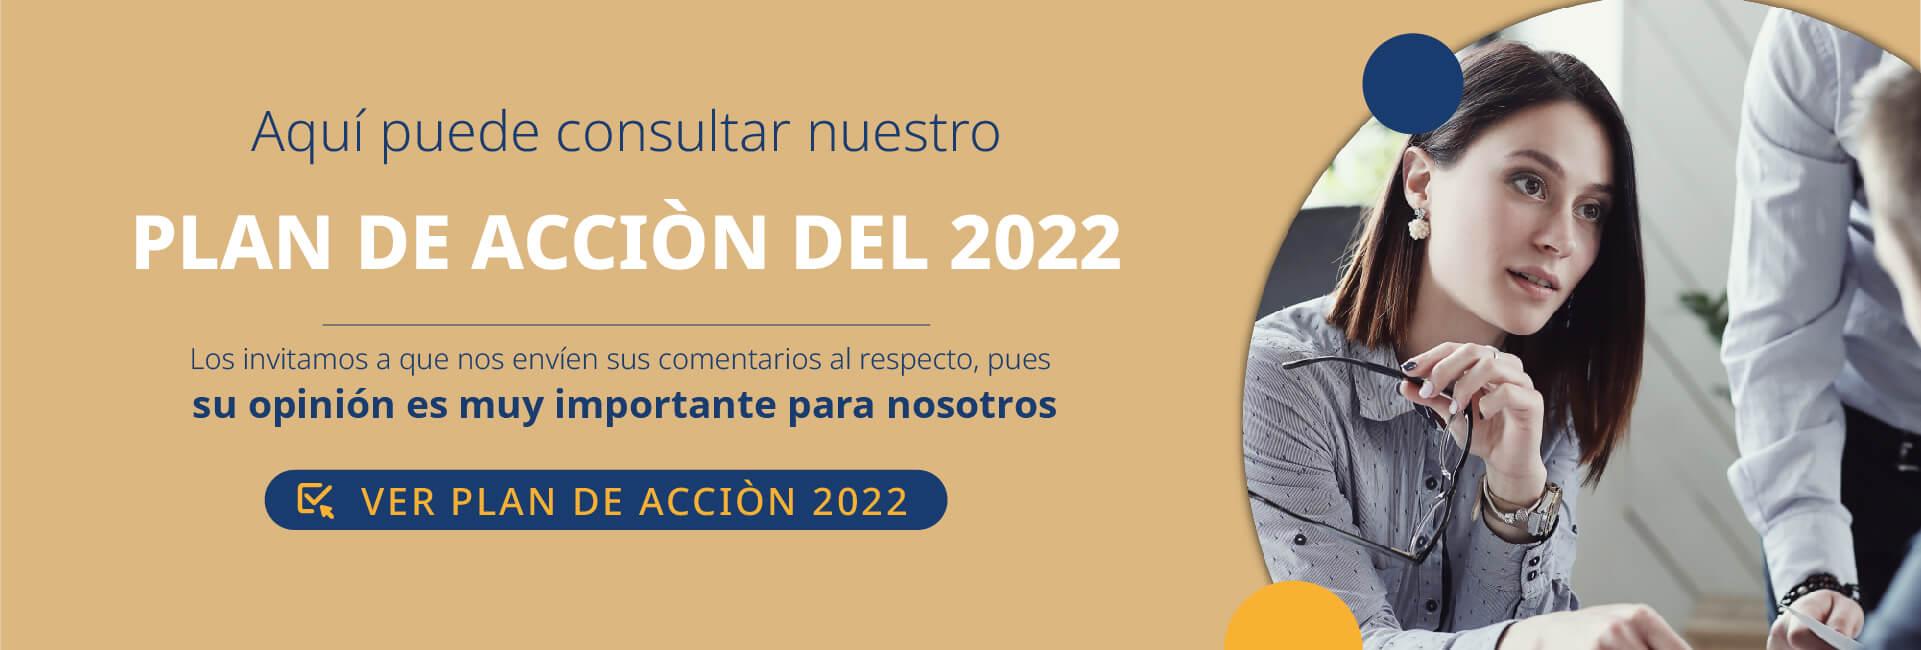 Plan de Accion 2022